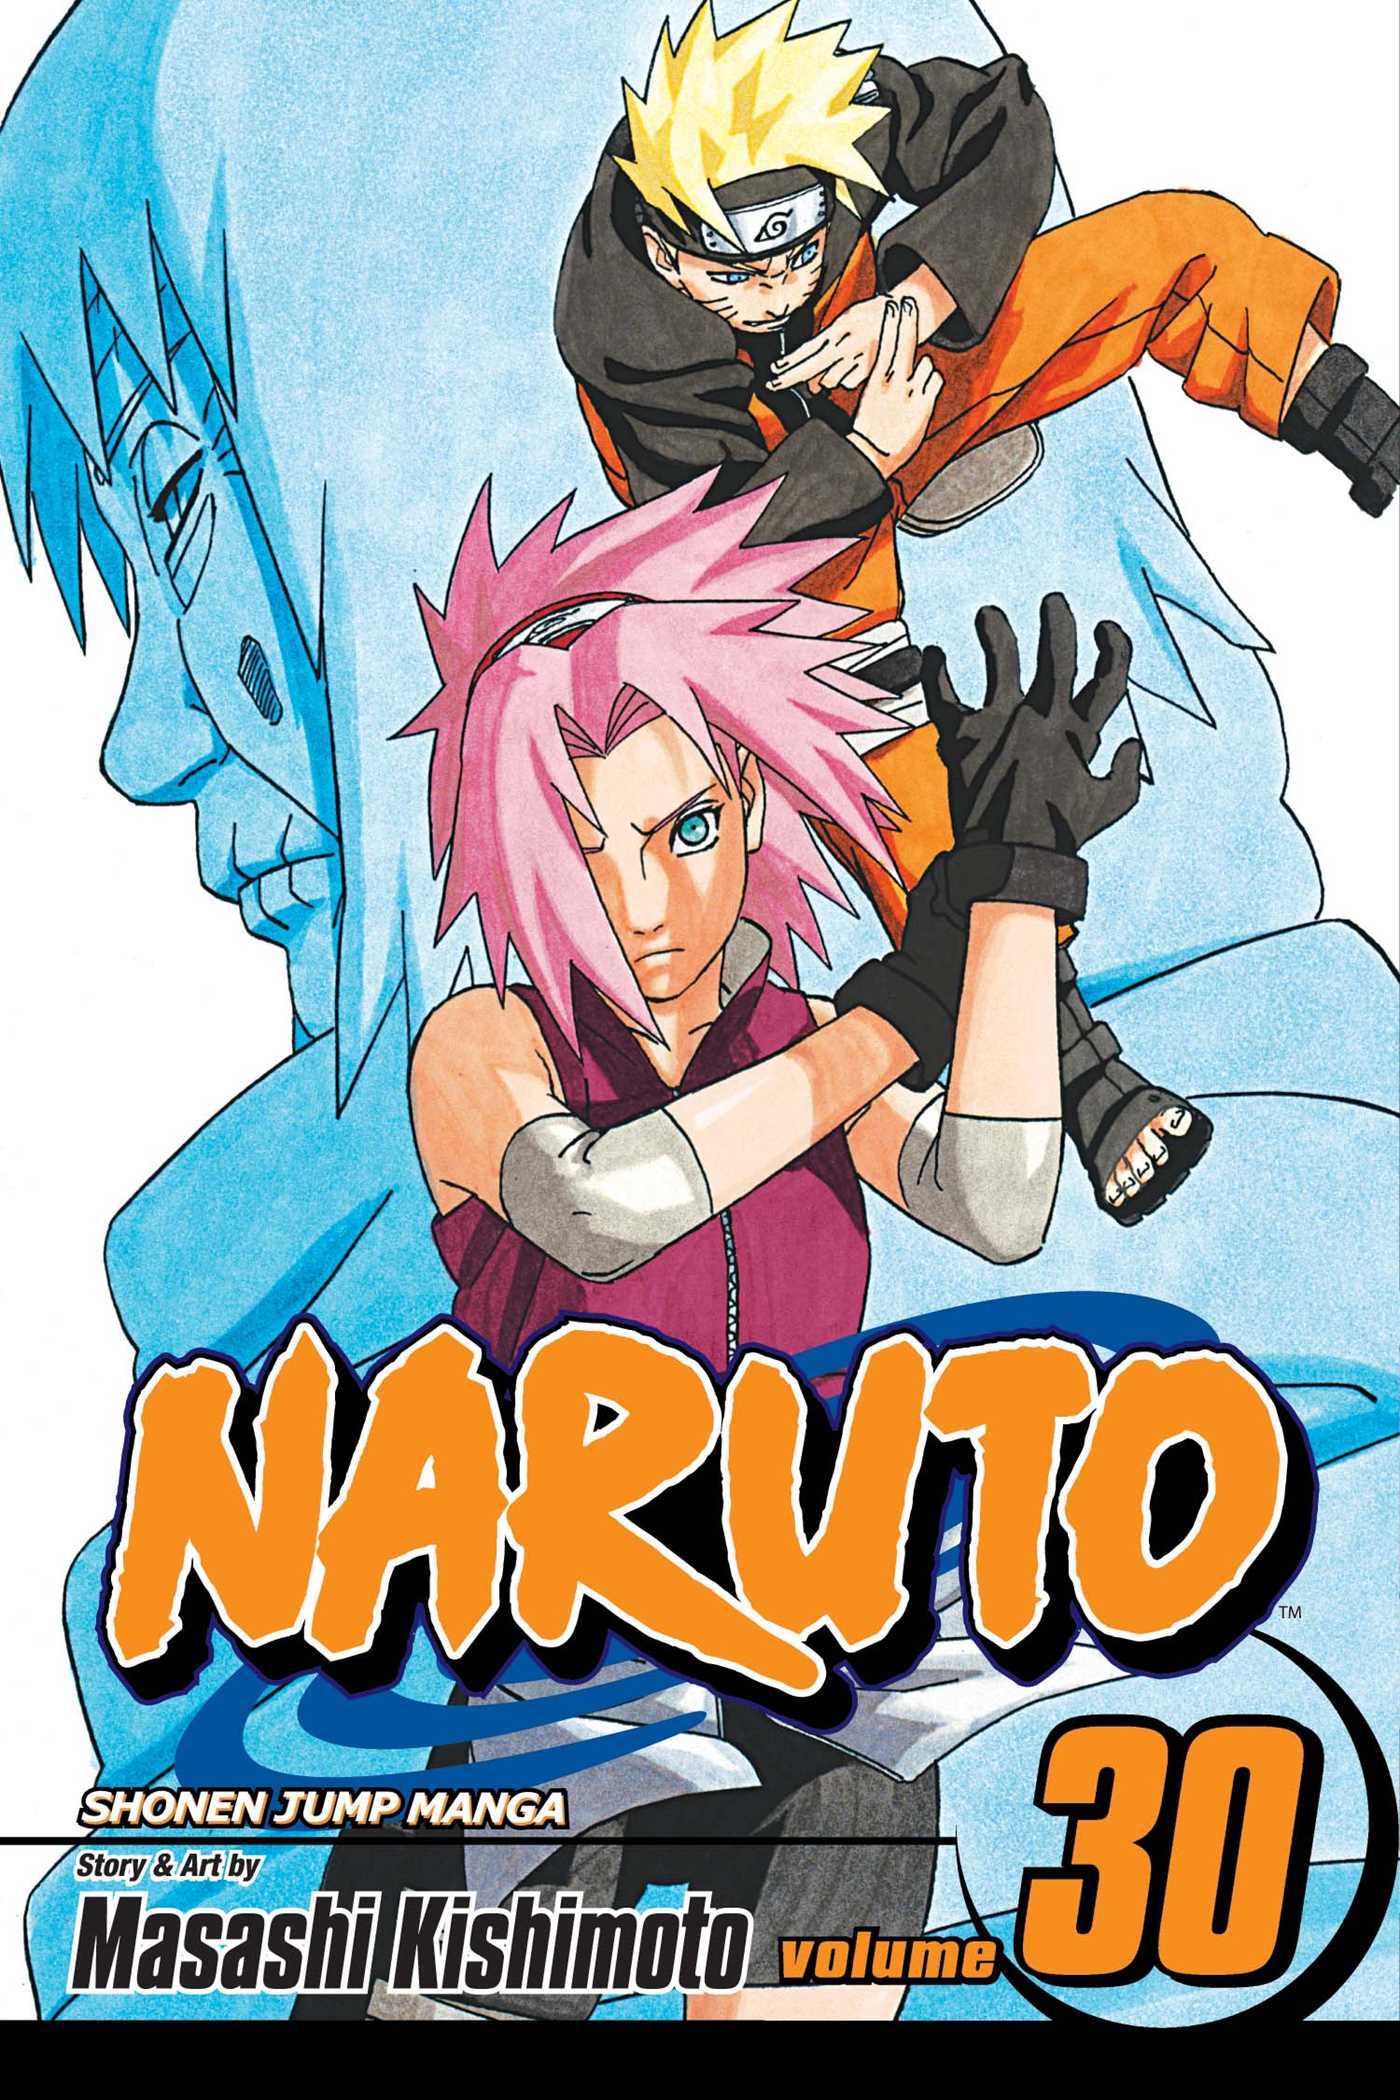 Naruto Vol. 30 | Kishimoto, Masashi (Auteur)